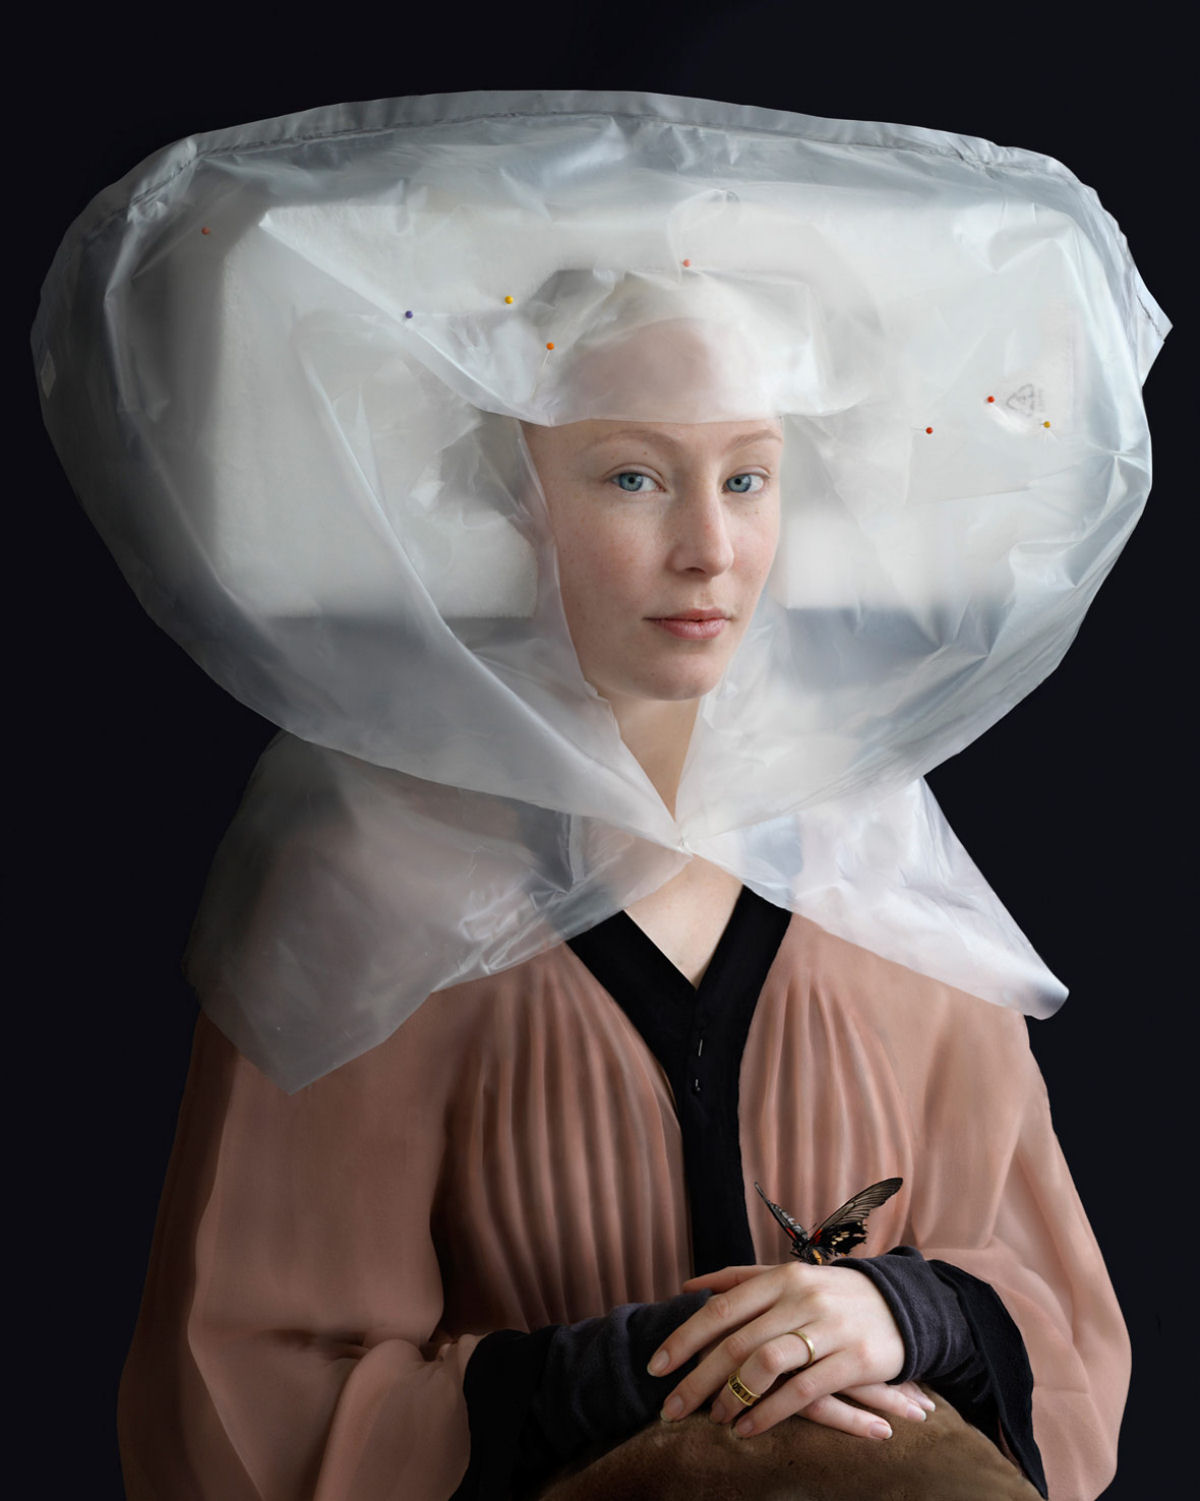 Embalagens recicladas so elaboradas em trajes renascentistas por artista holandesa 02